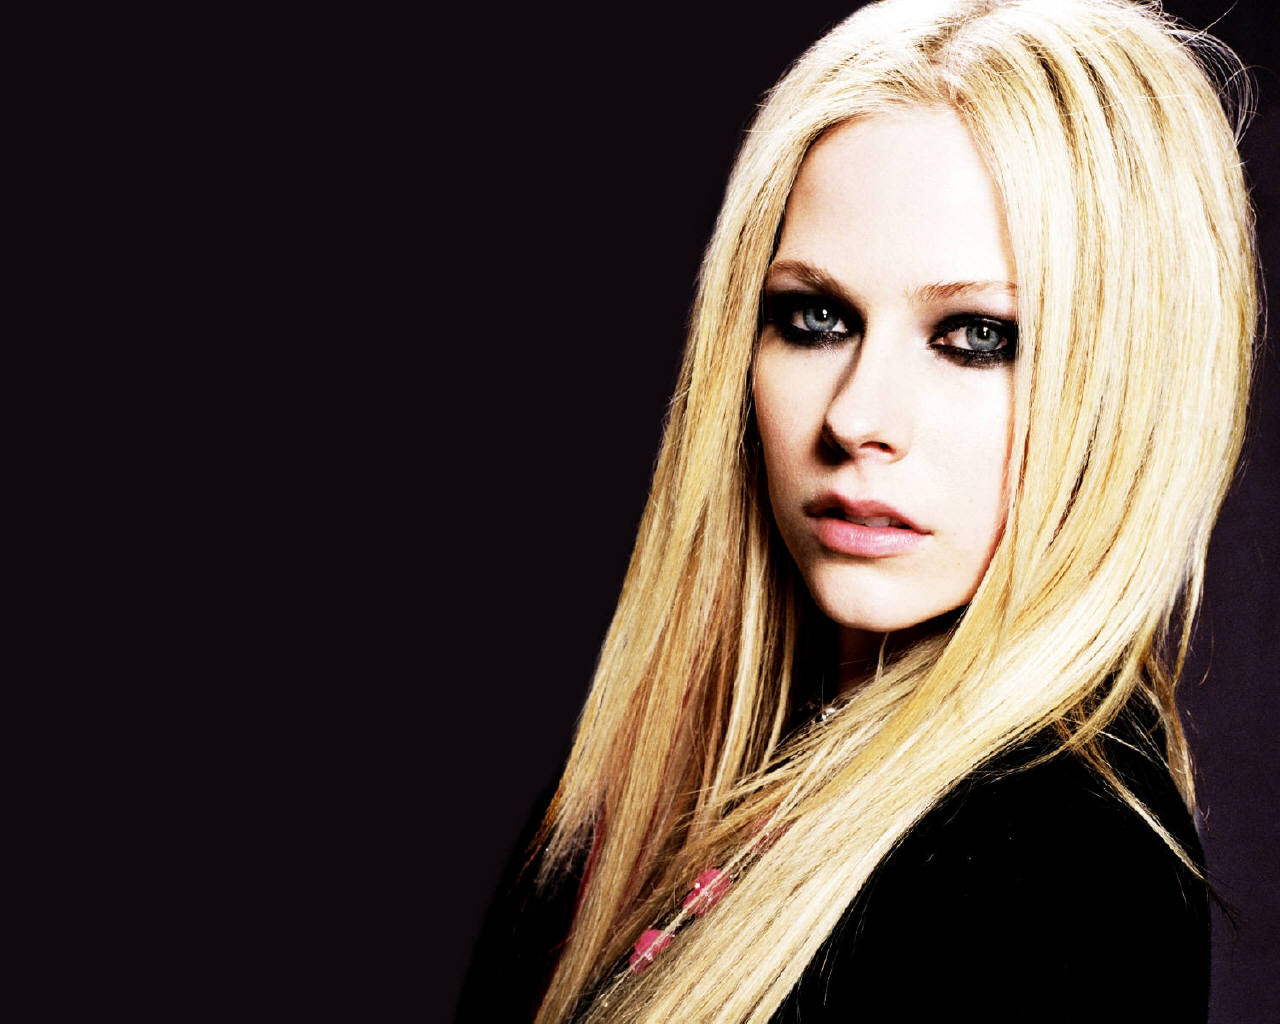 Fond d'ecran Avril Lavigne chanteuse